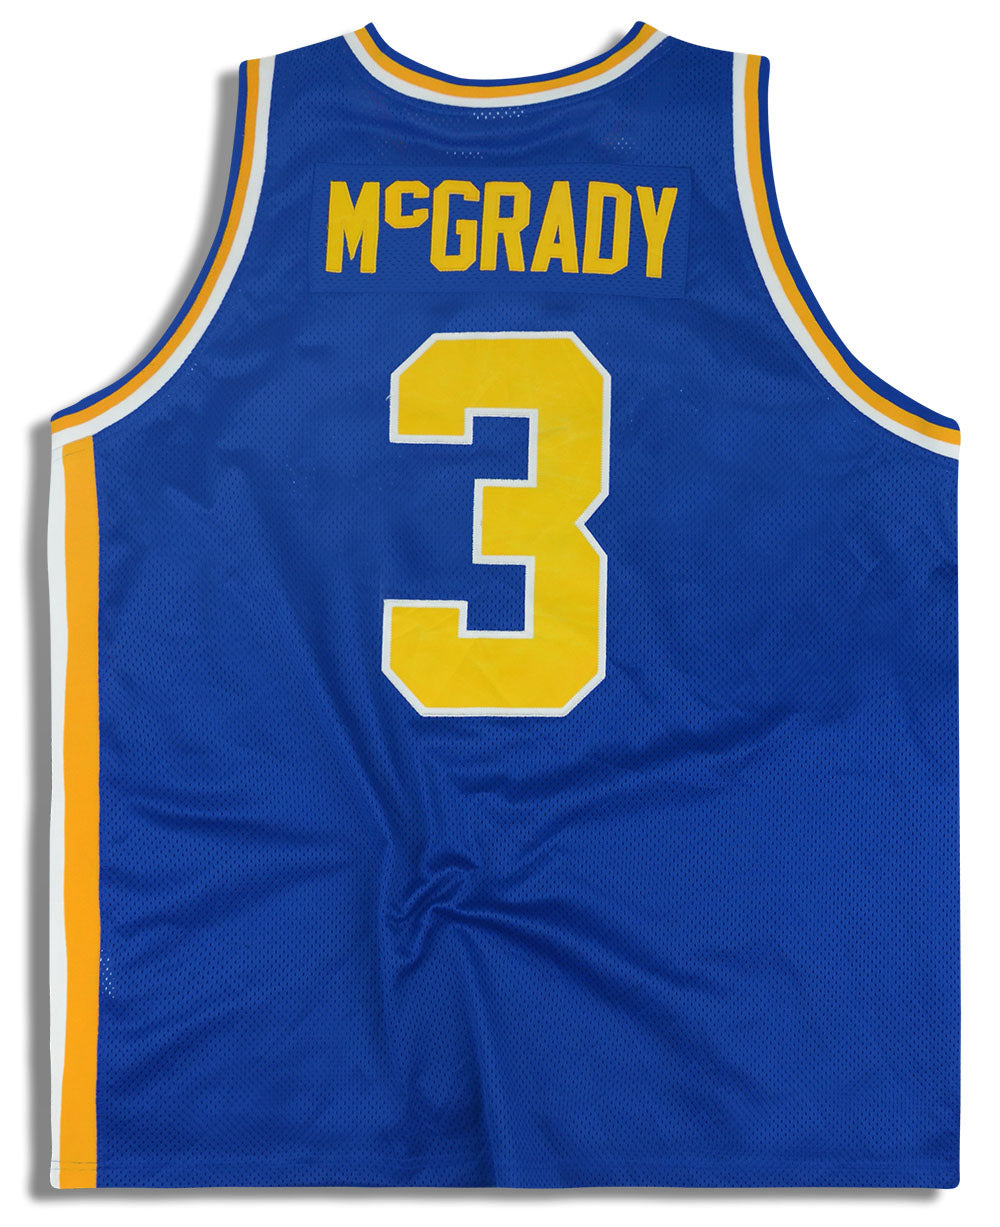 1993-96 AUBURNDALE McGRADY #3 ADIDAS TRUE SCHOOL SWINGMAN JERSEY (AWAY) XXL